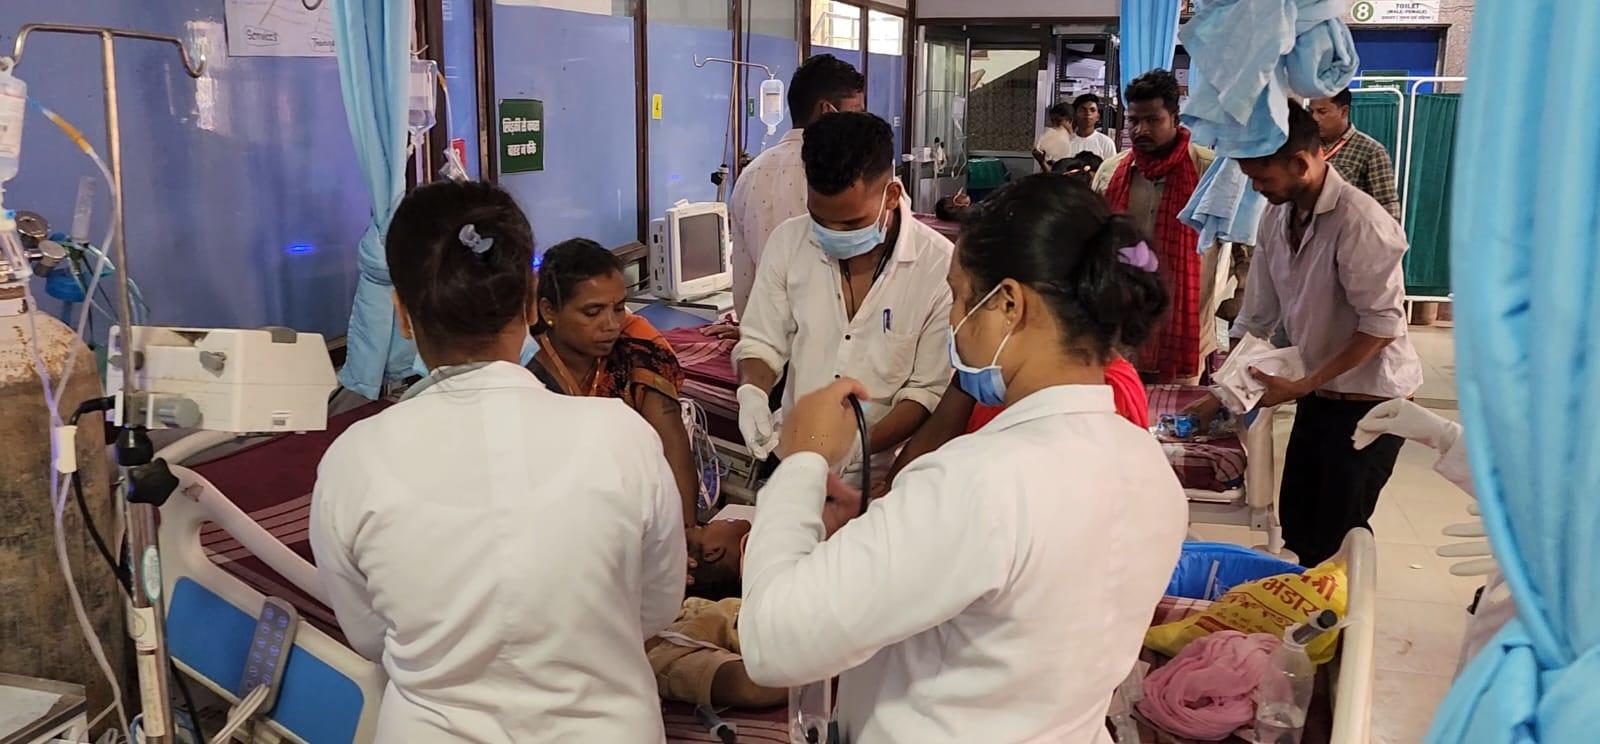 कोण्डागांव: फूड पॉइजनिंग के शिकार हुए एक ही परिवार के सात बच्चे, जिला अस्पताल में उपचार जारी